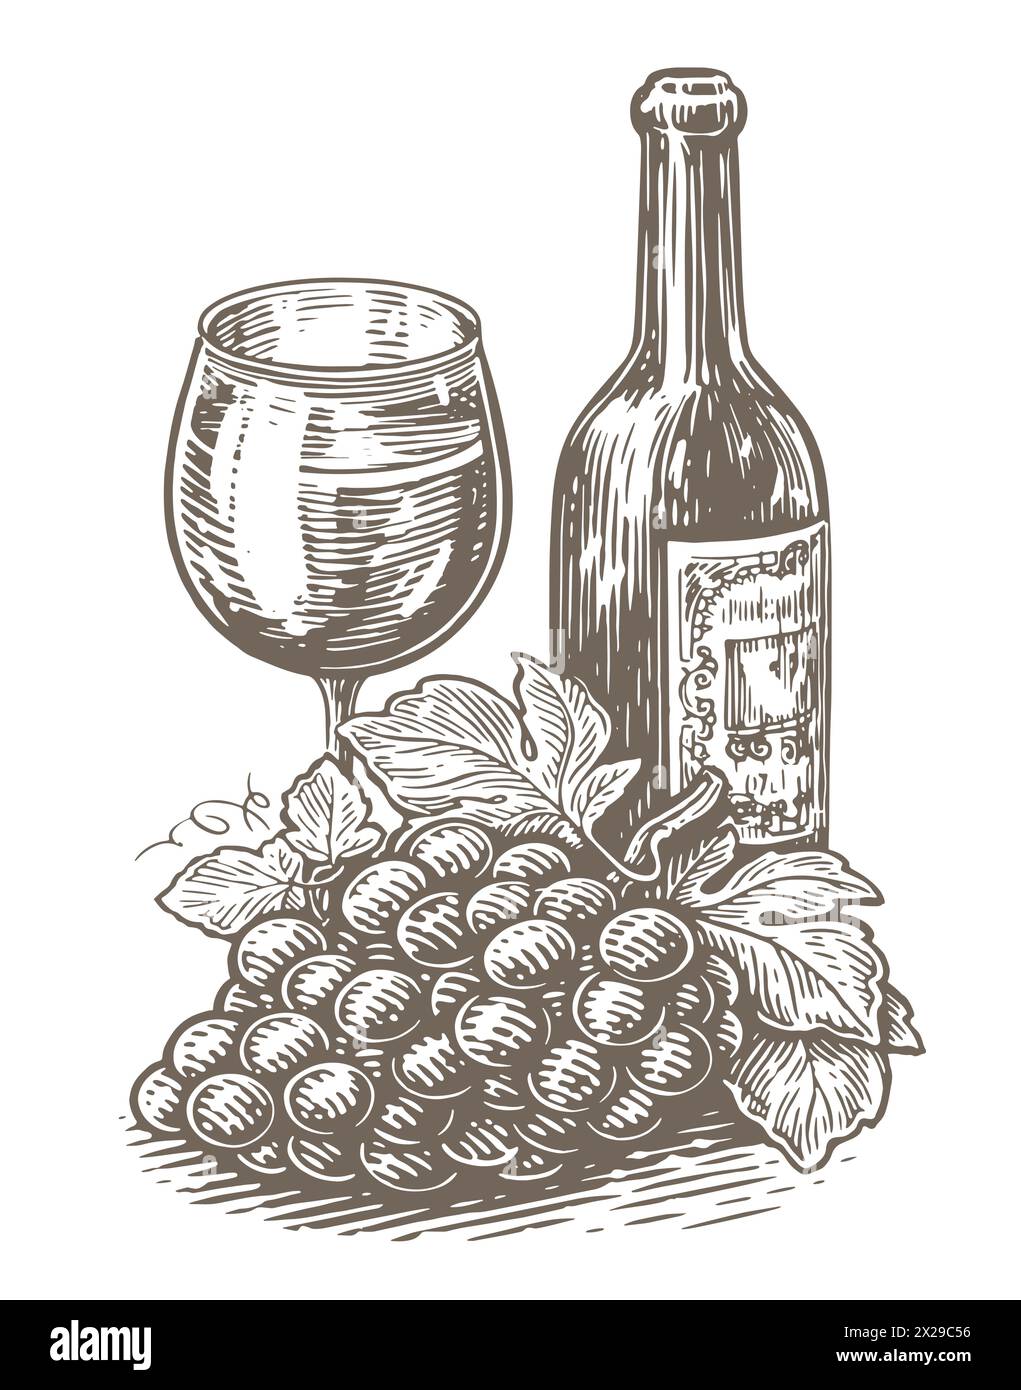 Bottiglia di vino e bicchiere, grappoli di uva. Winery, vignetta del vigneto. Illustrazione vettoriale vintage Illustrazione Vettoriale